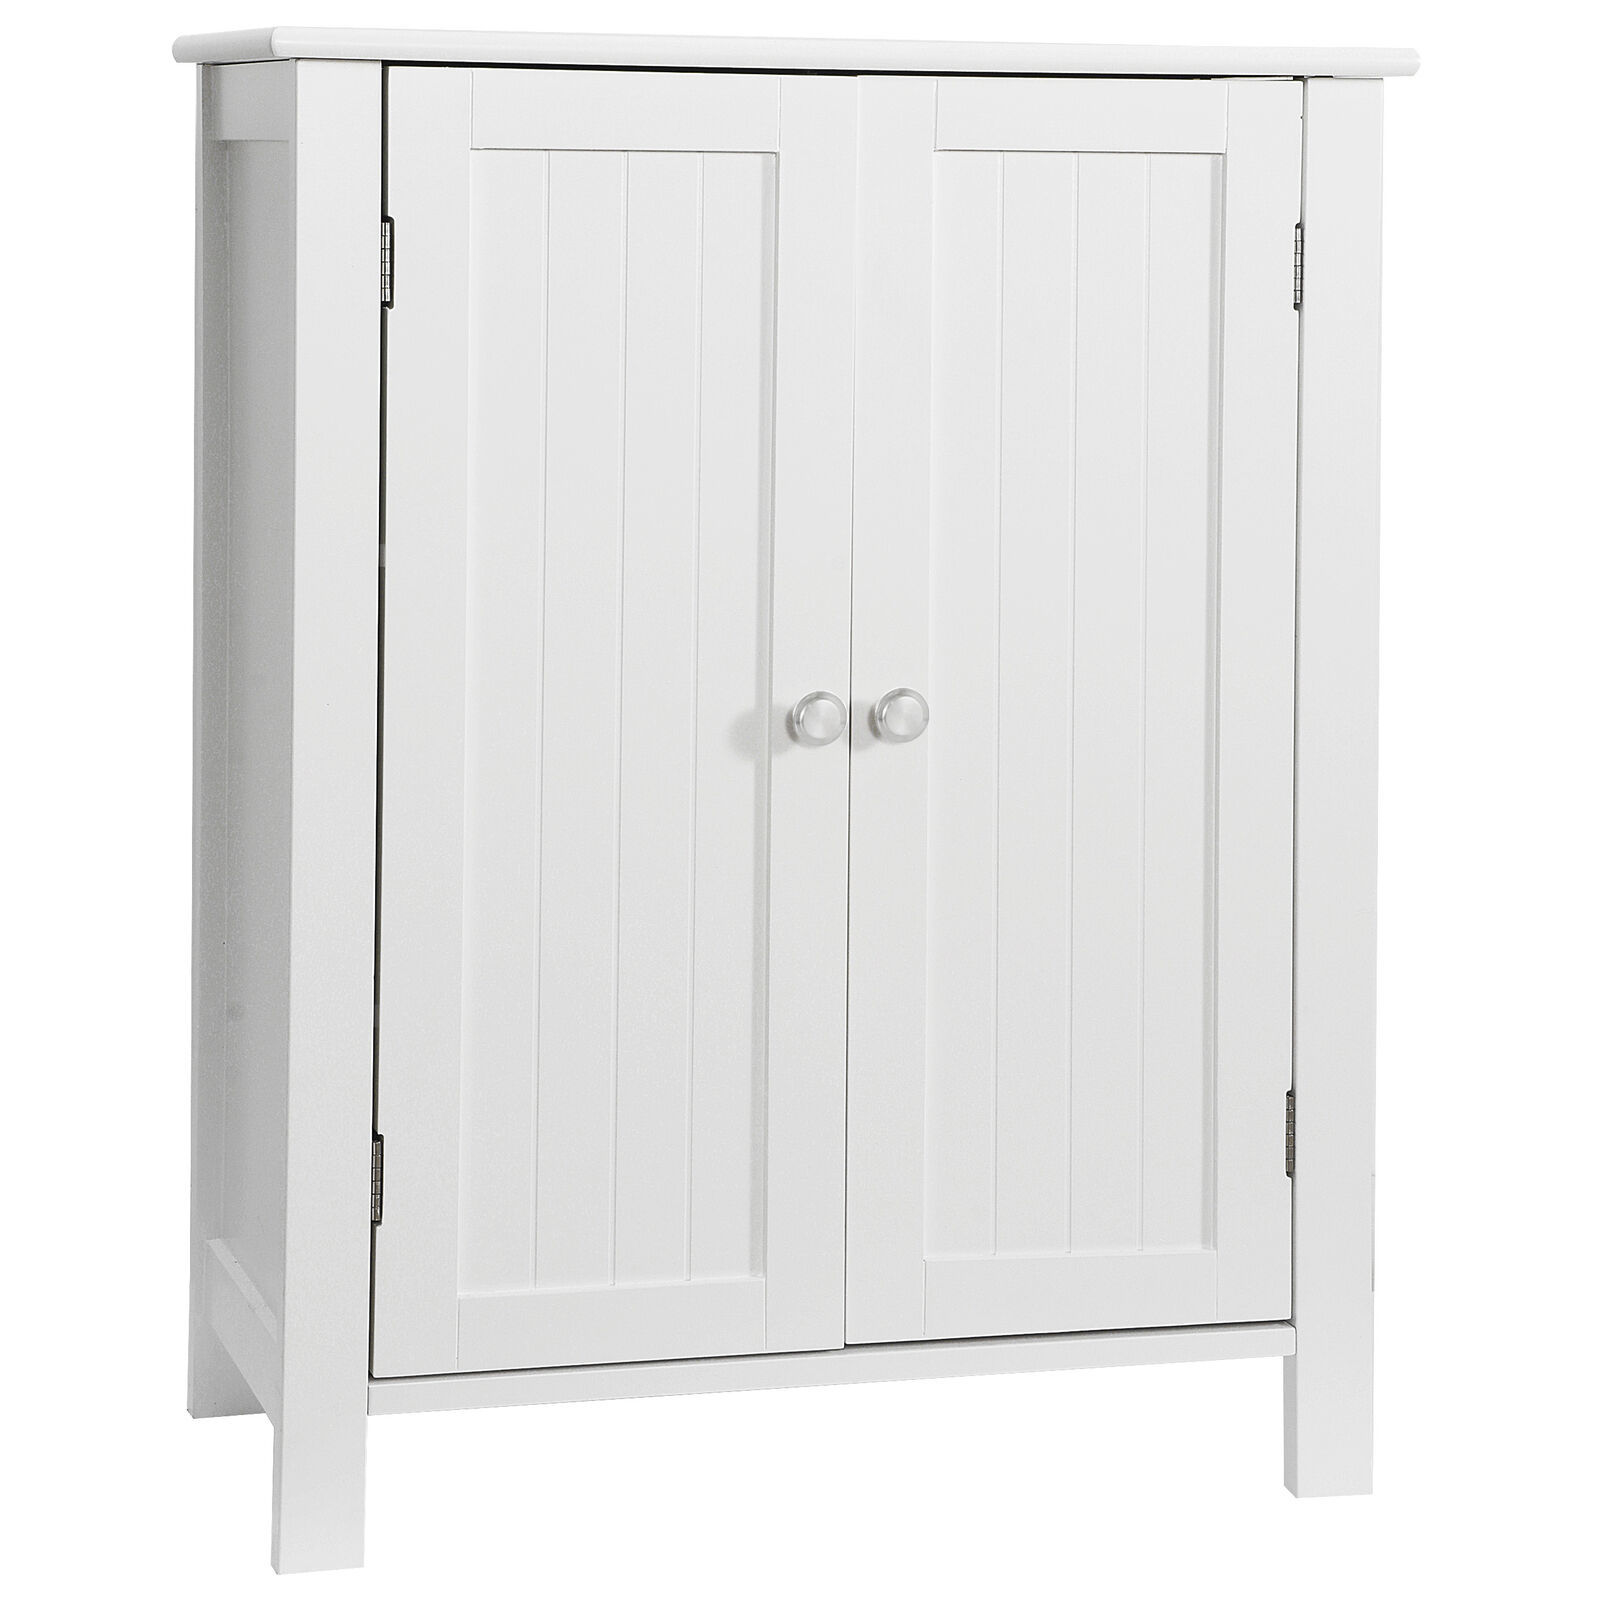 Primary image for White Bathroom Floor Storage Cabinet With Double Door Adjustable Shelf Cupboard